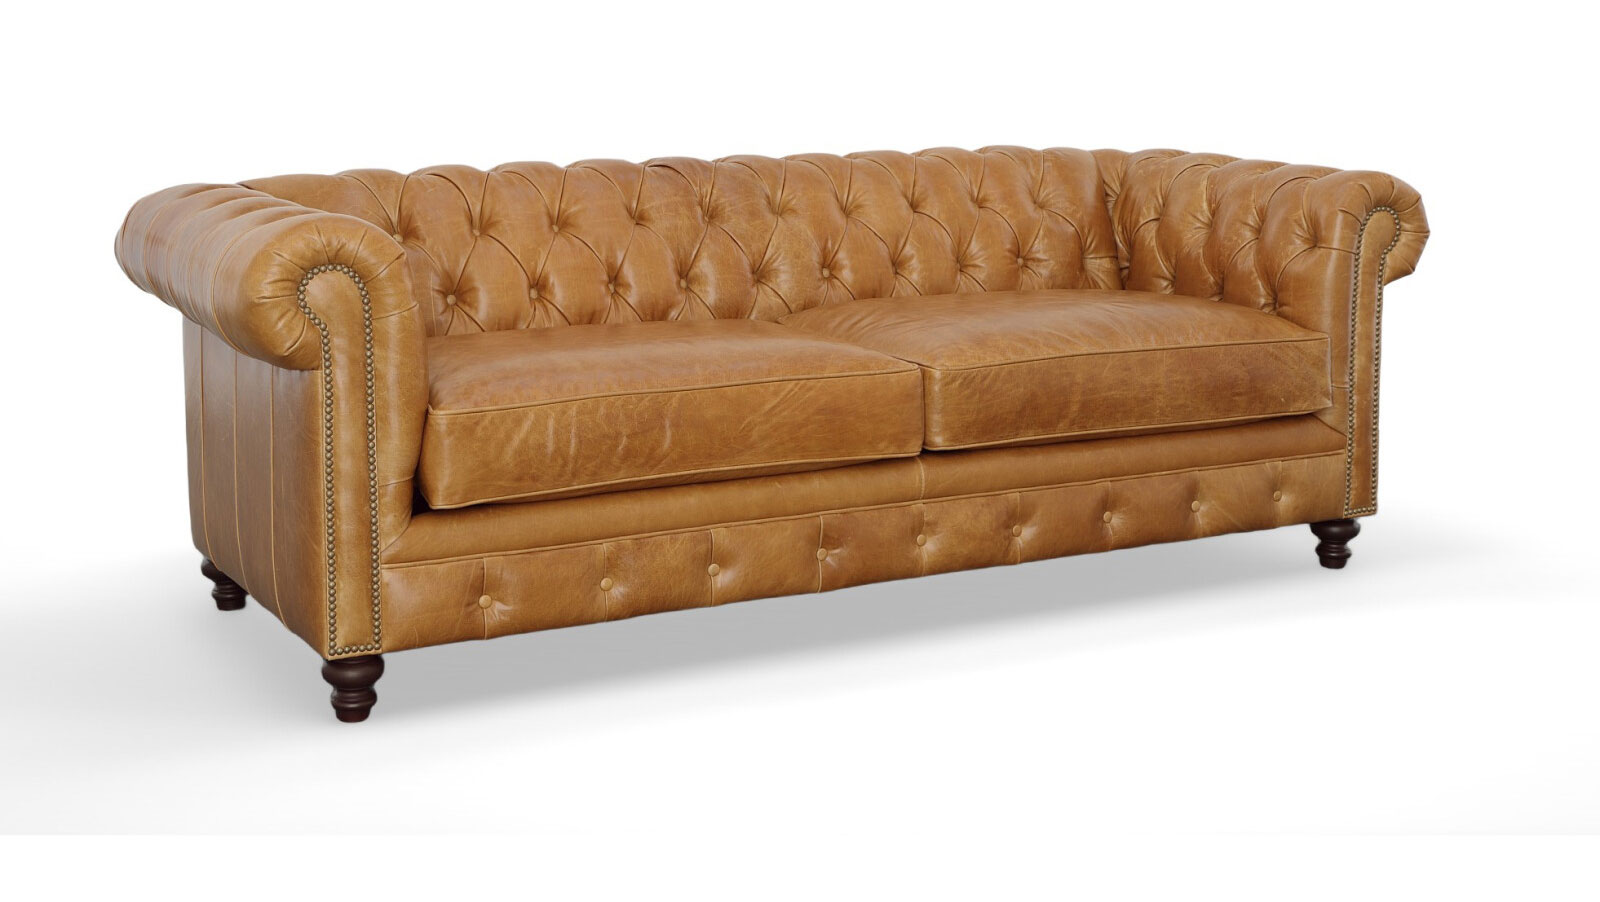 606 Birmingham Sofa by CC Leather